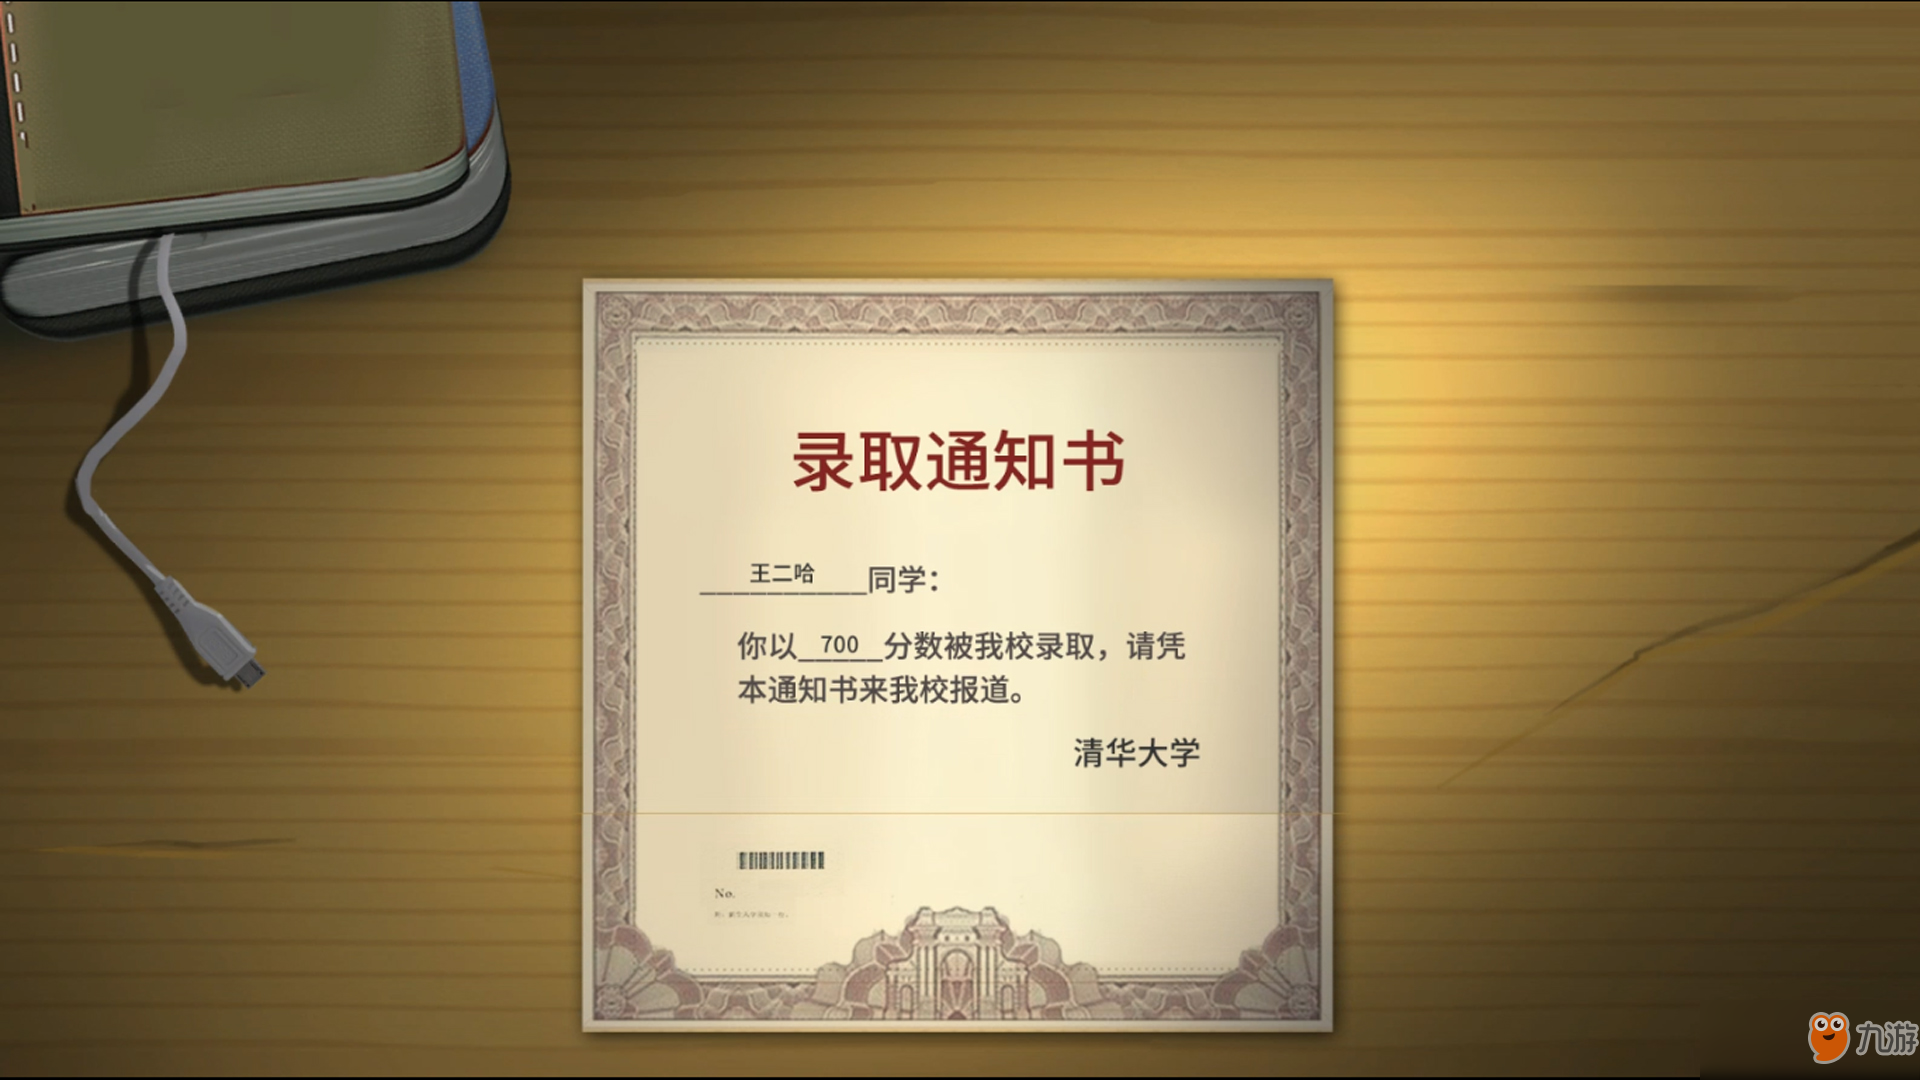 《中国式家长》Steam上“特别好评” 好评率达89%